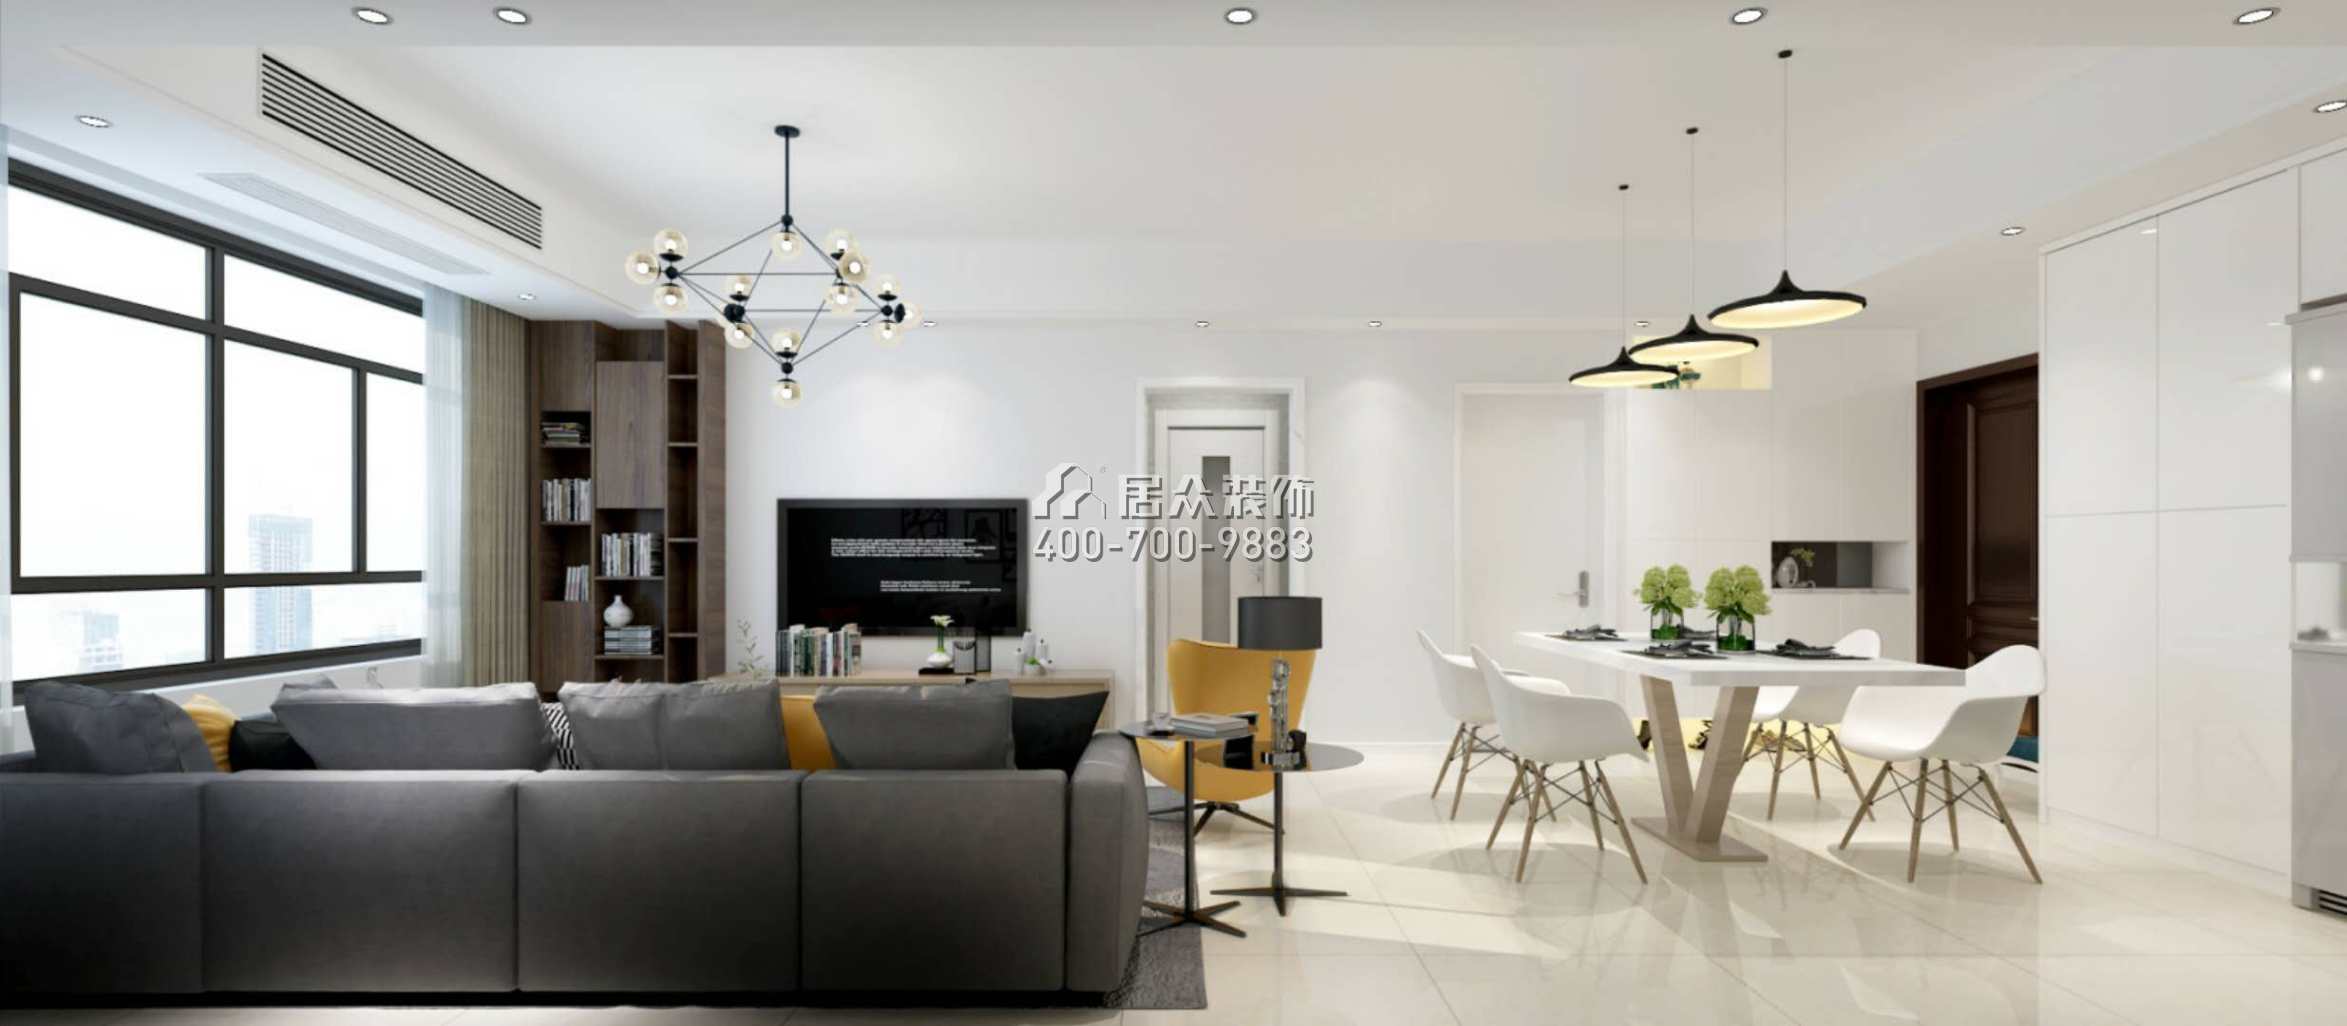 德景園85平方米現代簡約風格平層戶型客廳裝修效果圖